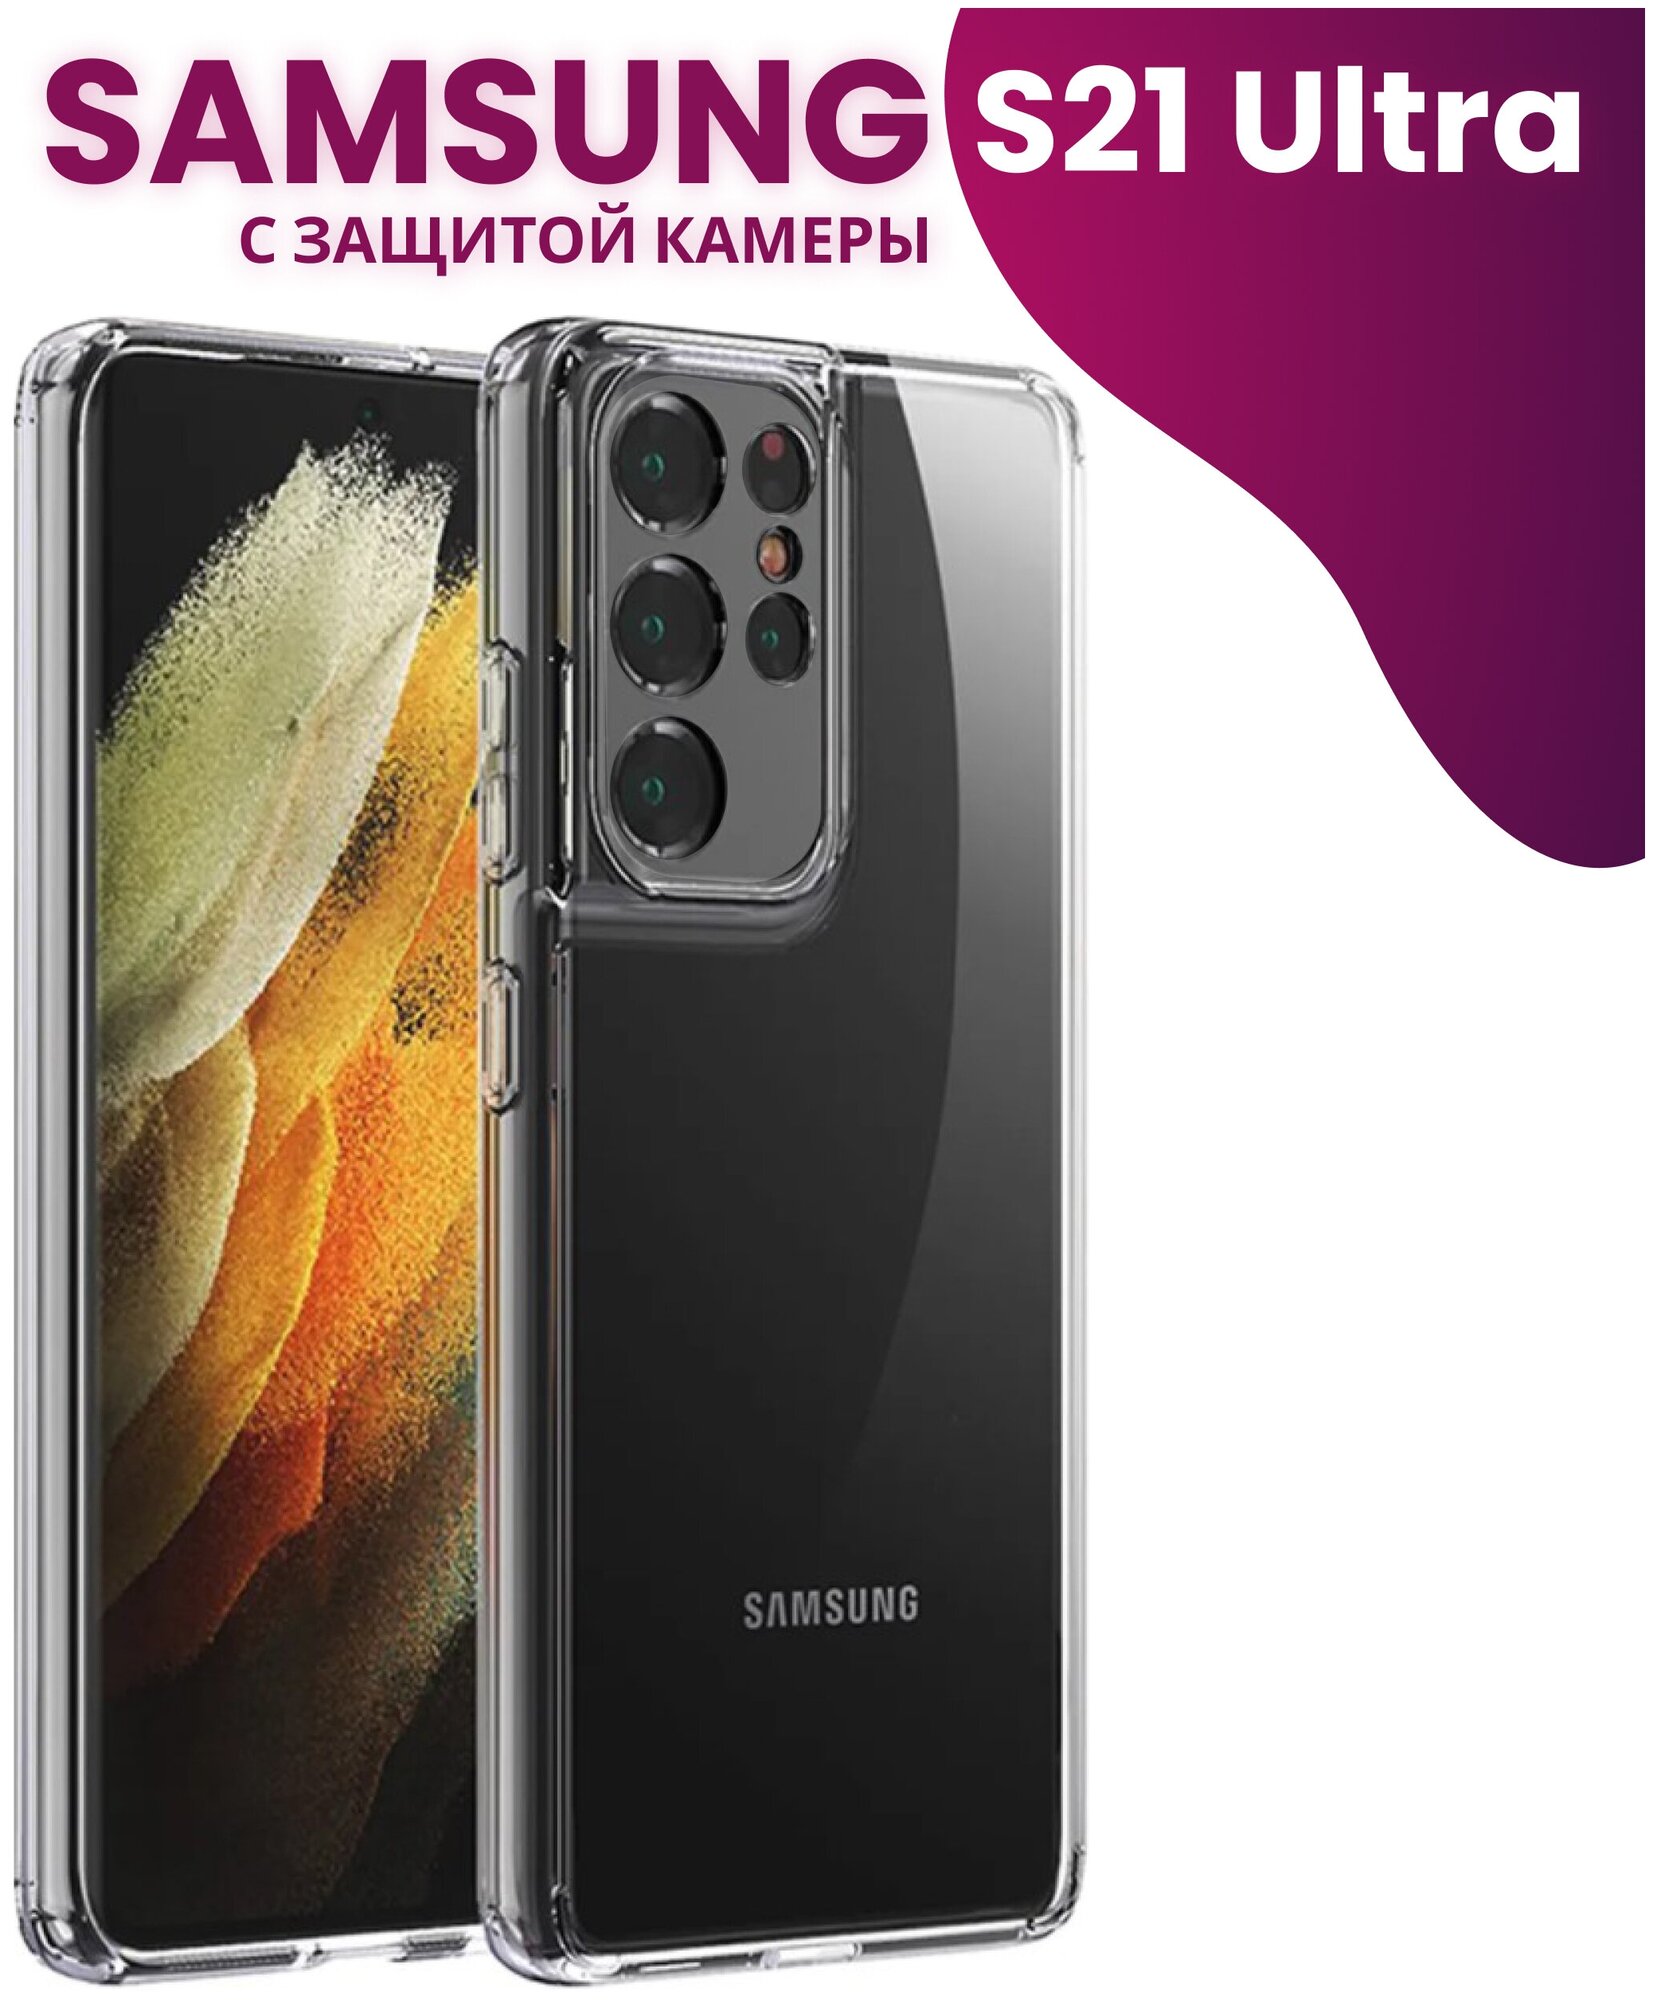 Ультратонкий силиконовый чехол для телефона Samsung Galaxy S21 Ultra с защитой камеры / Самсунг Галакси Эс 21 Ультра